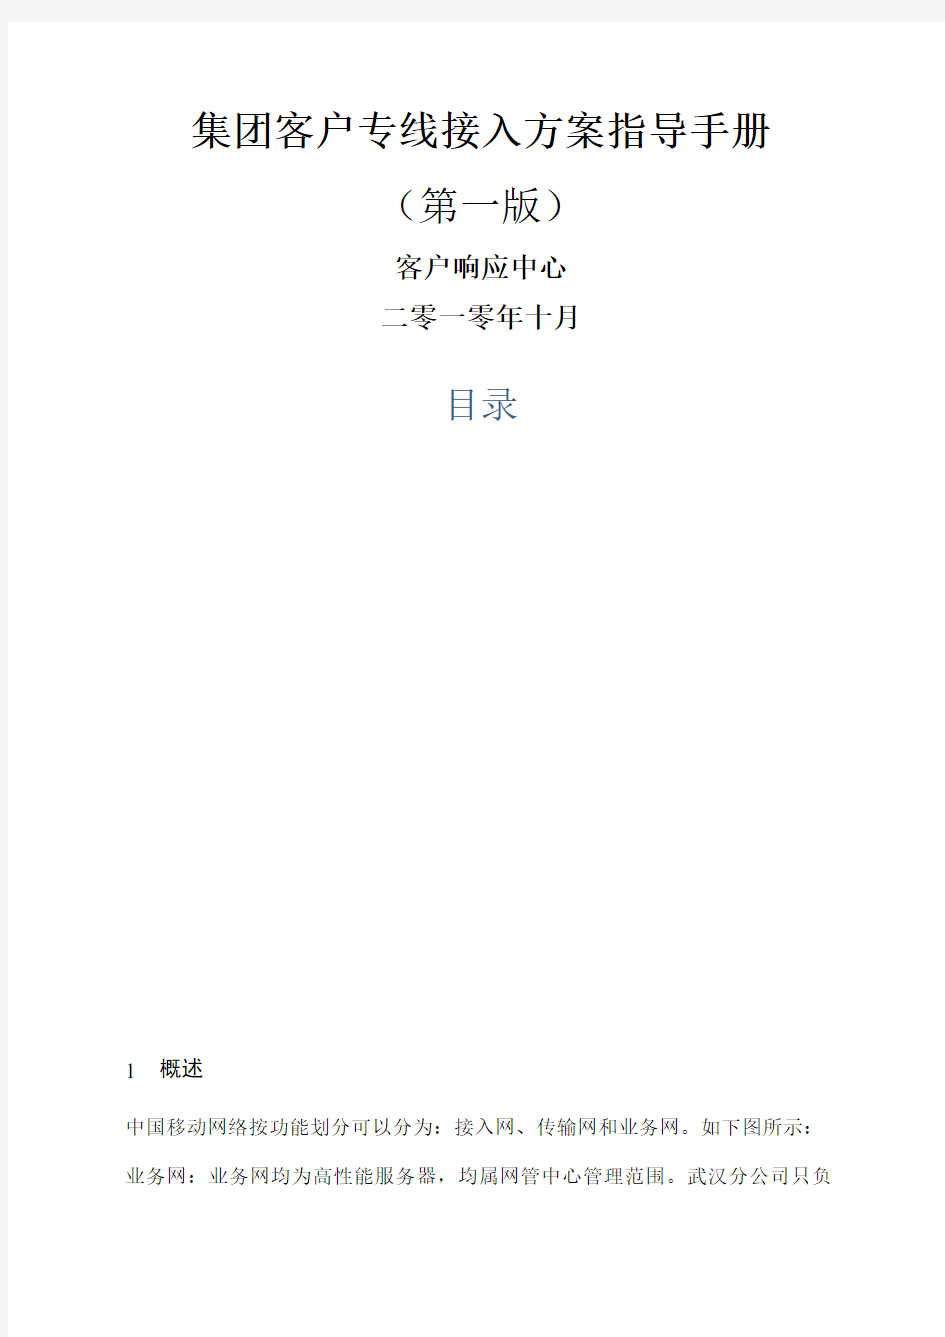 中国移动集团客户专线接入方案指导手册第一版 (2)